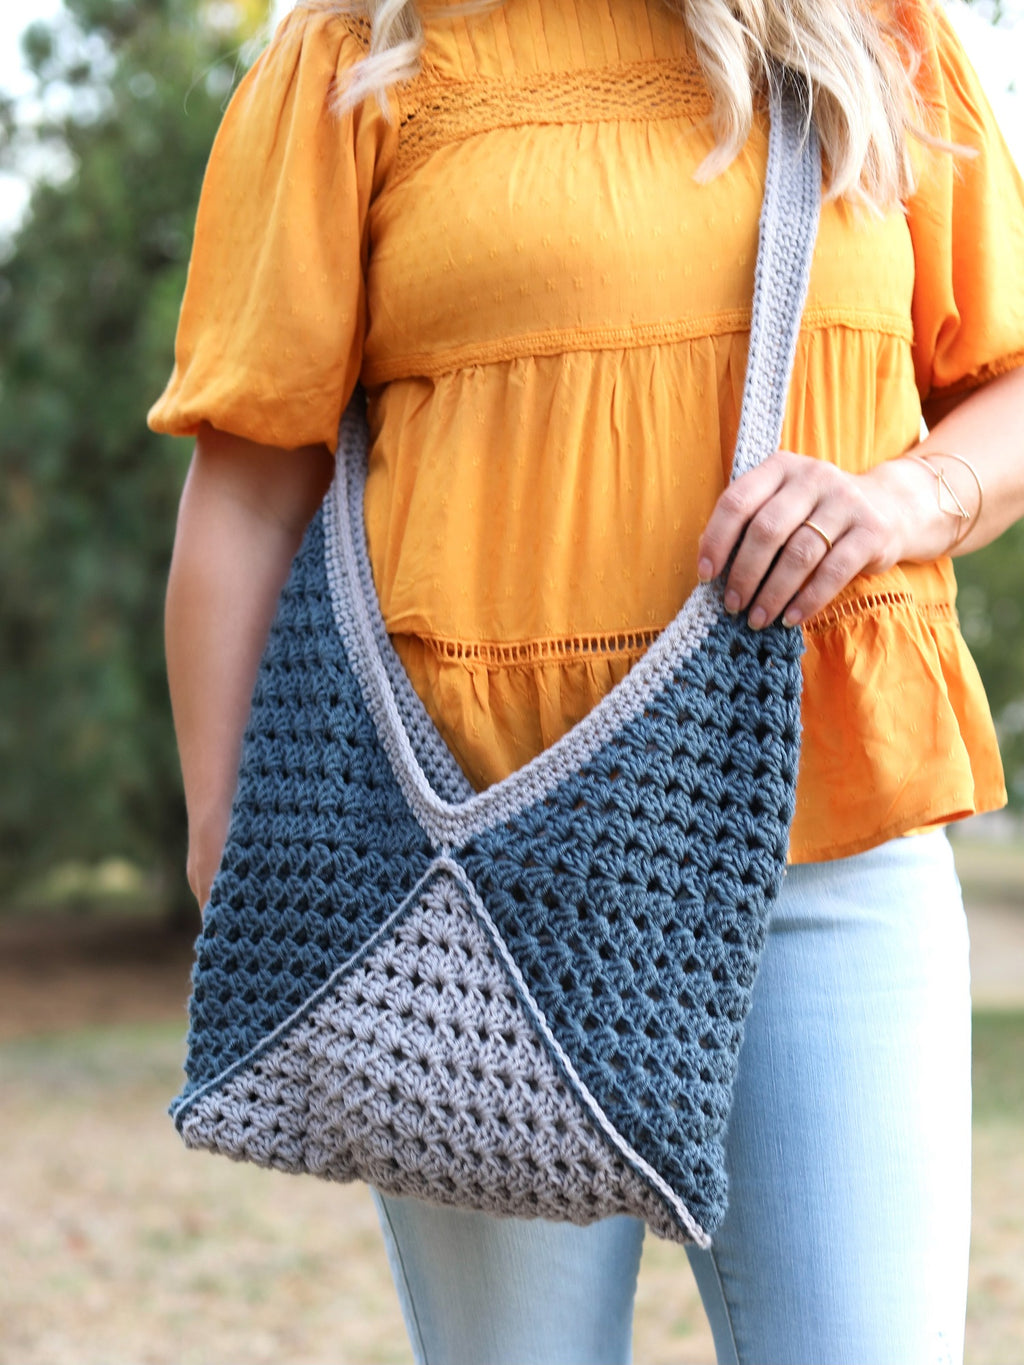 Crochet Kit - Amagansett Tote Bag – Lion Brand Yarn